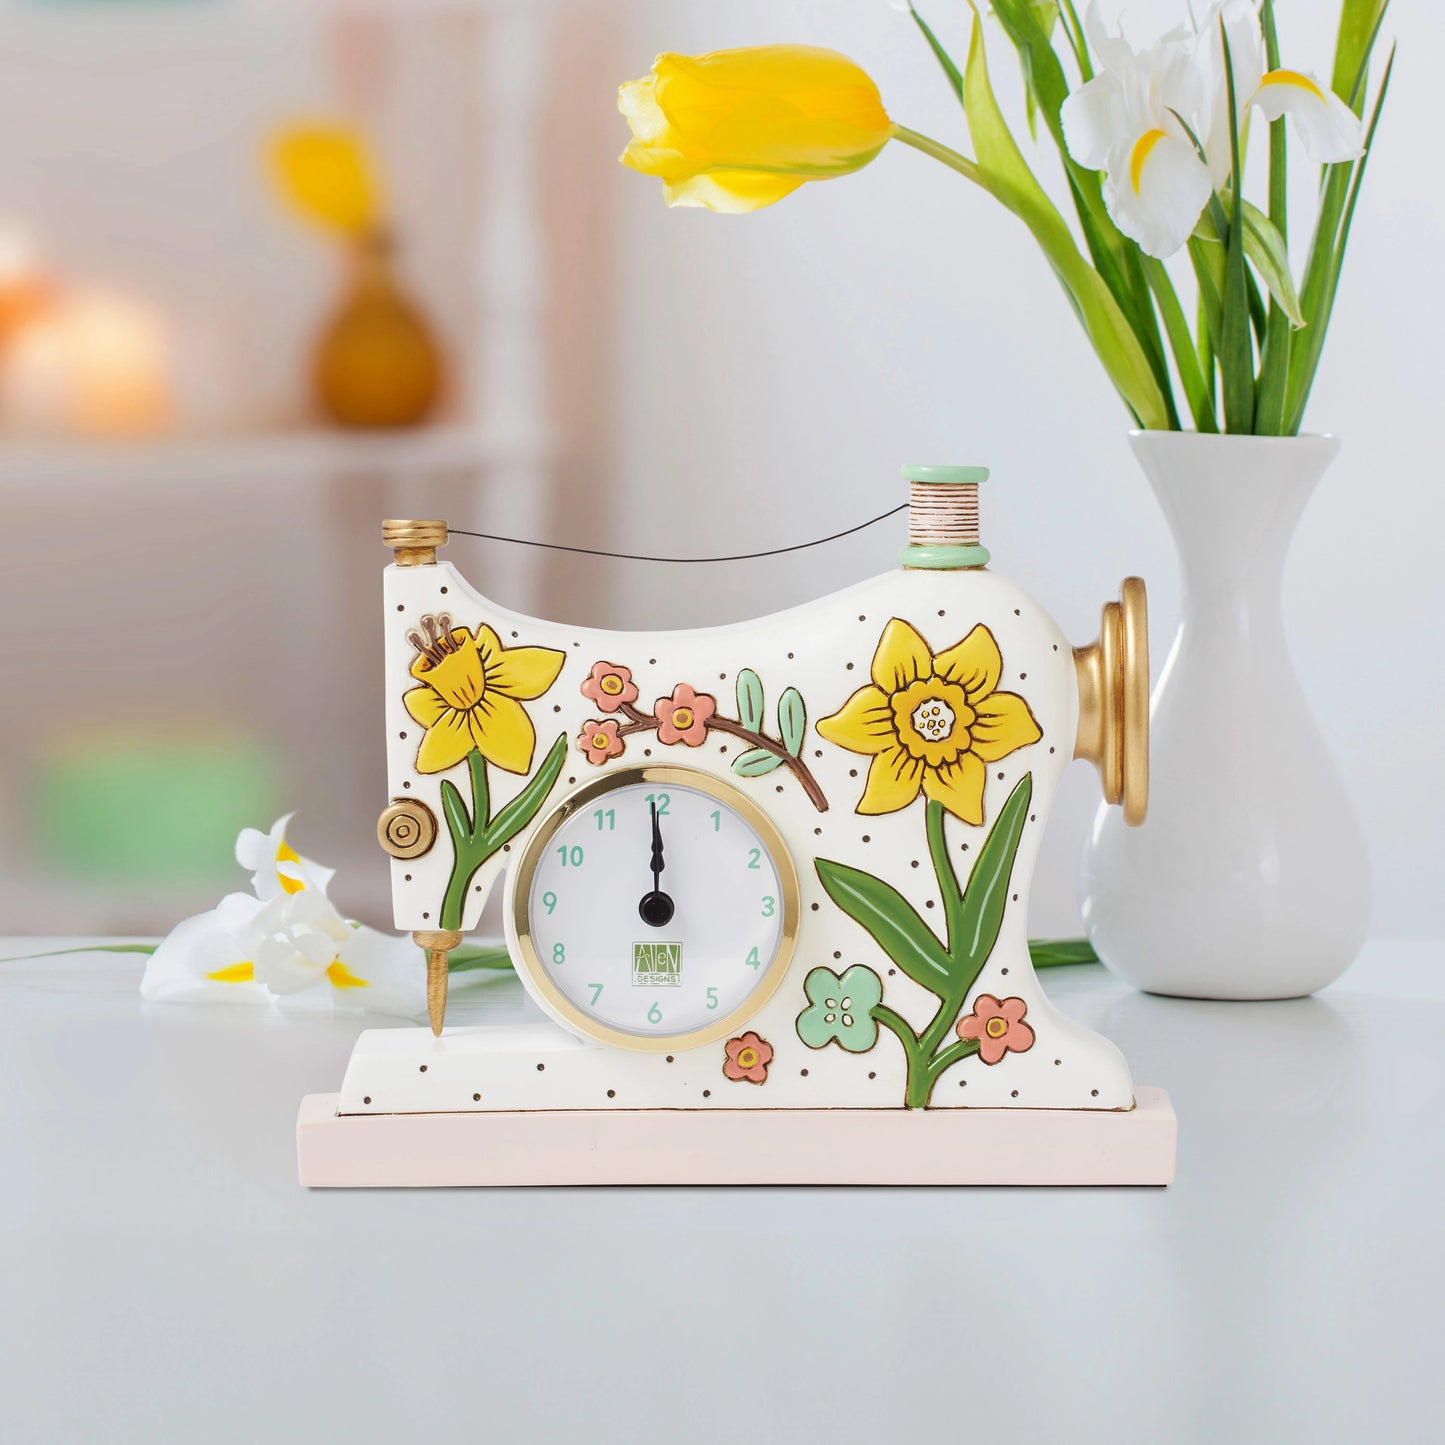 Allen Designs - Sew Happy Desk Clock